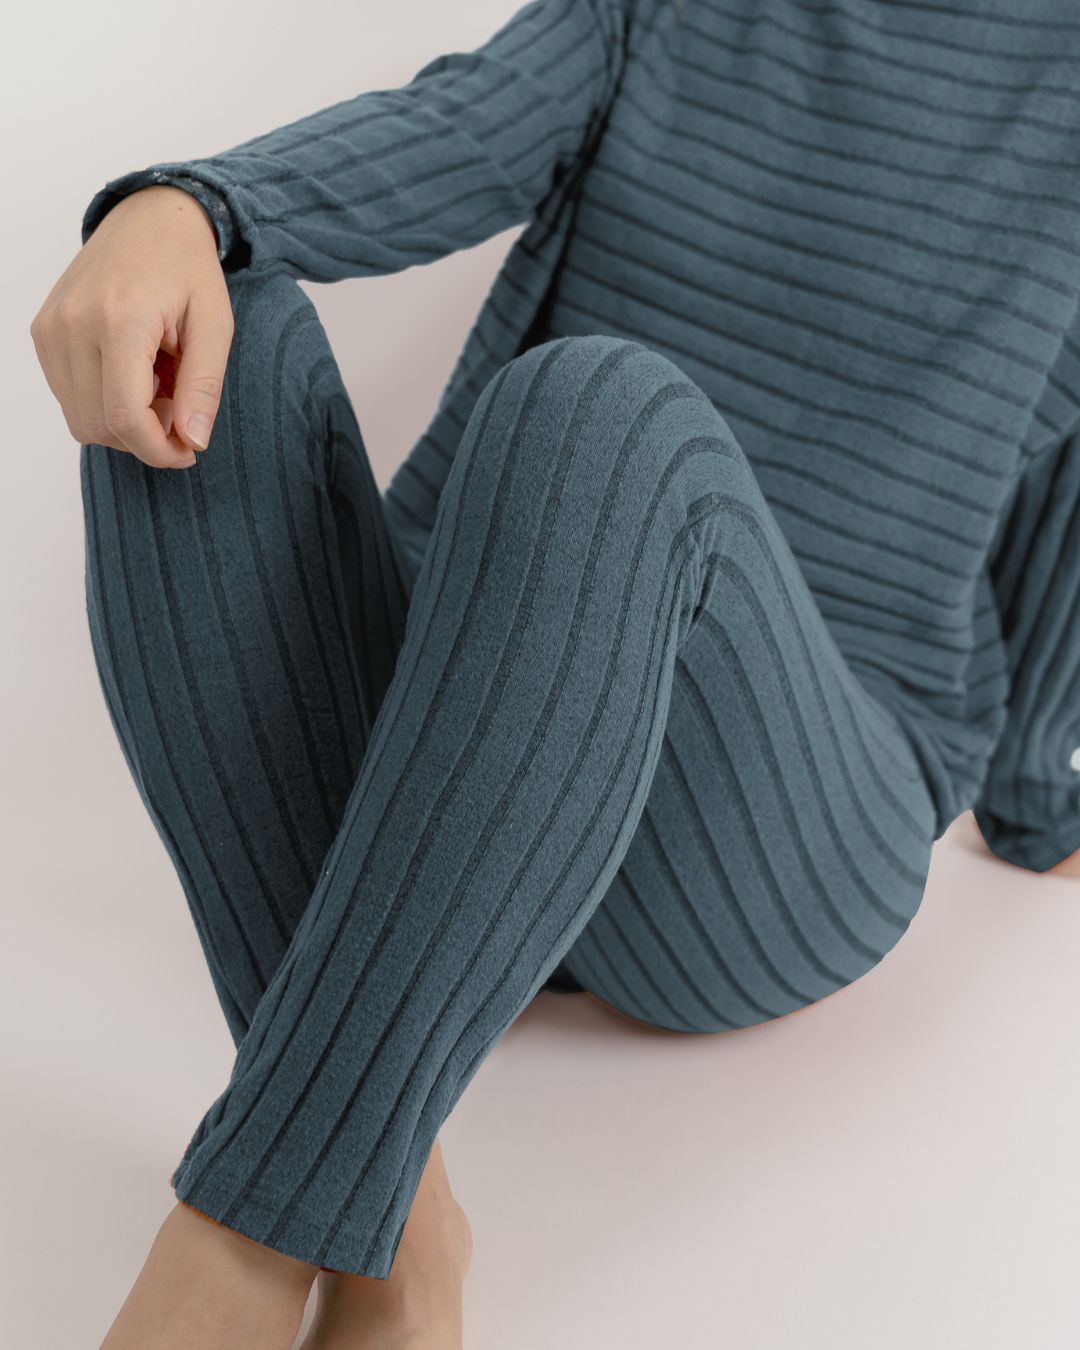 https://seamlesslingerie.com/cdn/shop/products/soft-lounge-ribbed-knit-relaxed-leggingstones-180899_1400x.jpg?v=1704259956